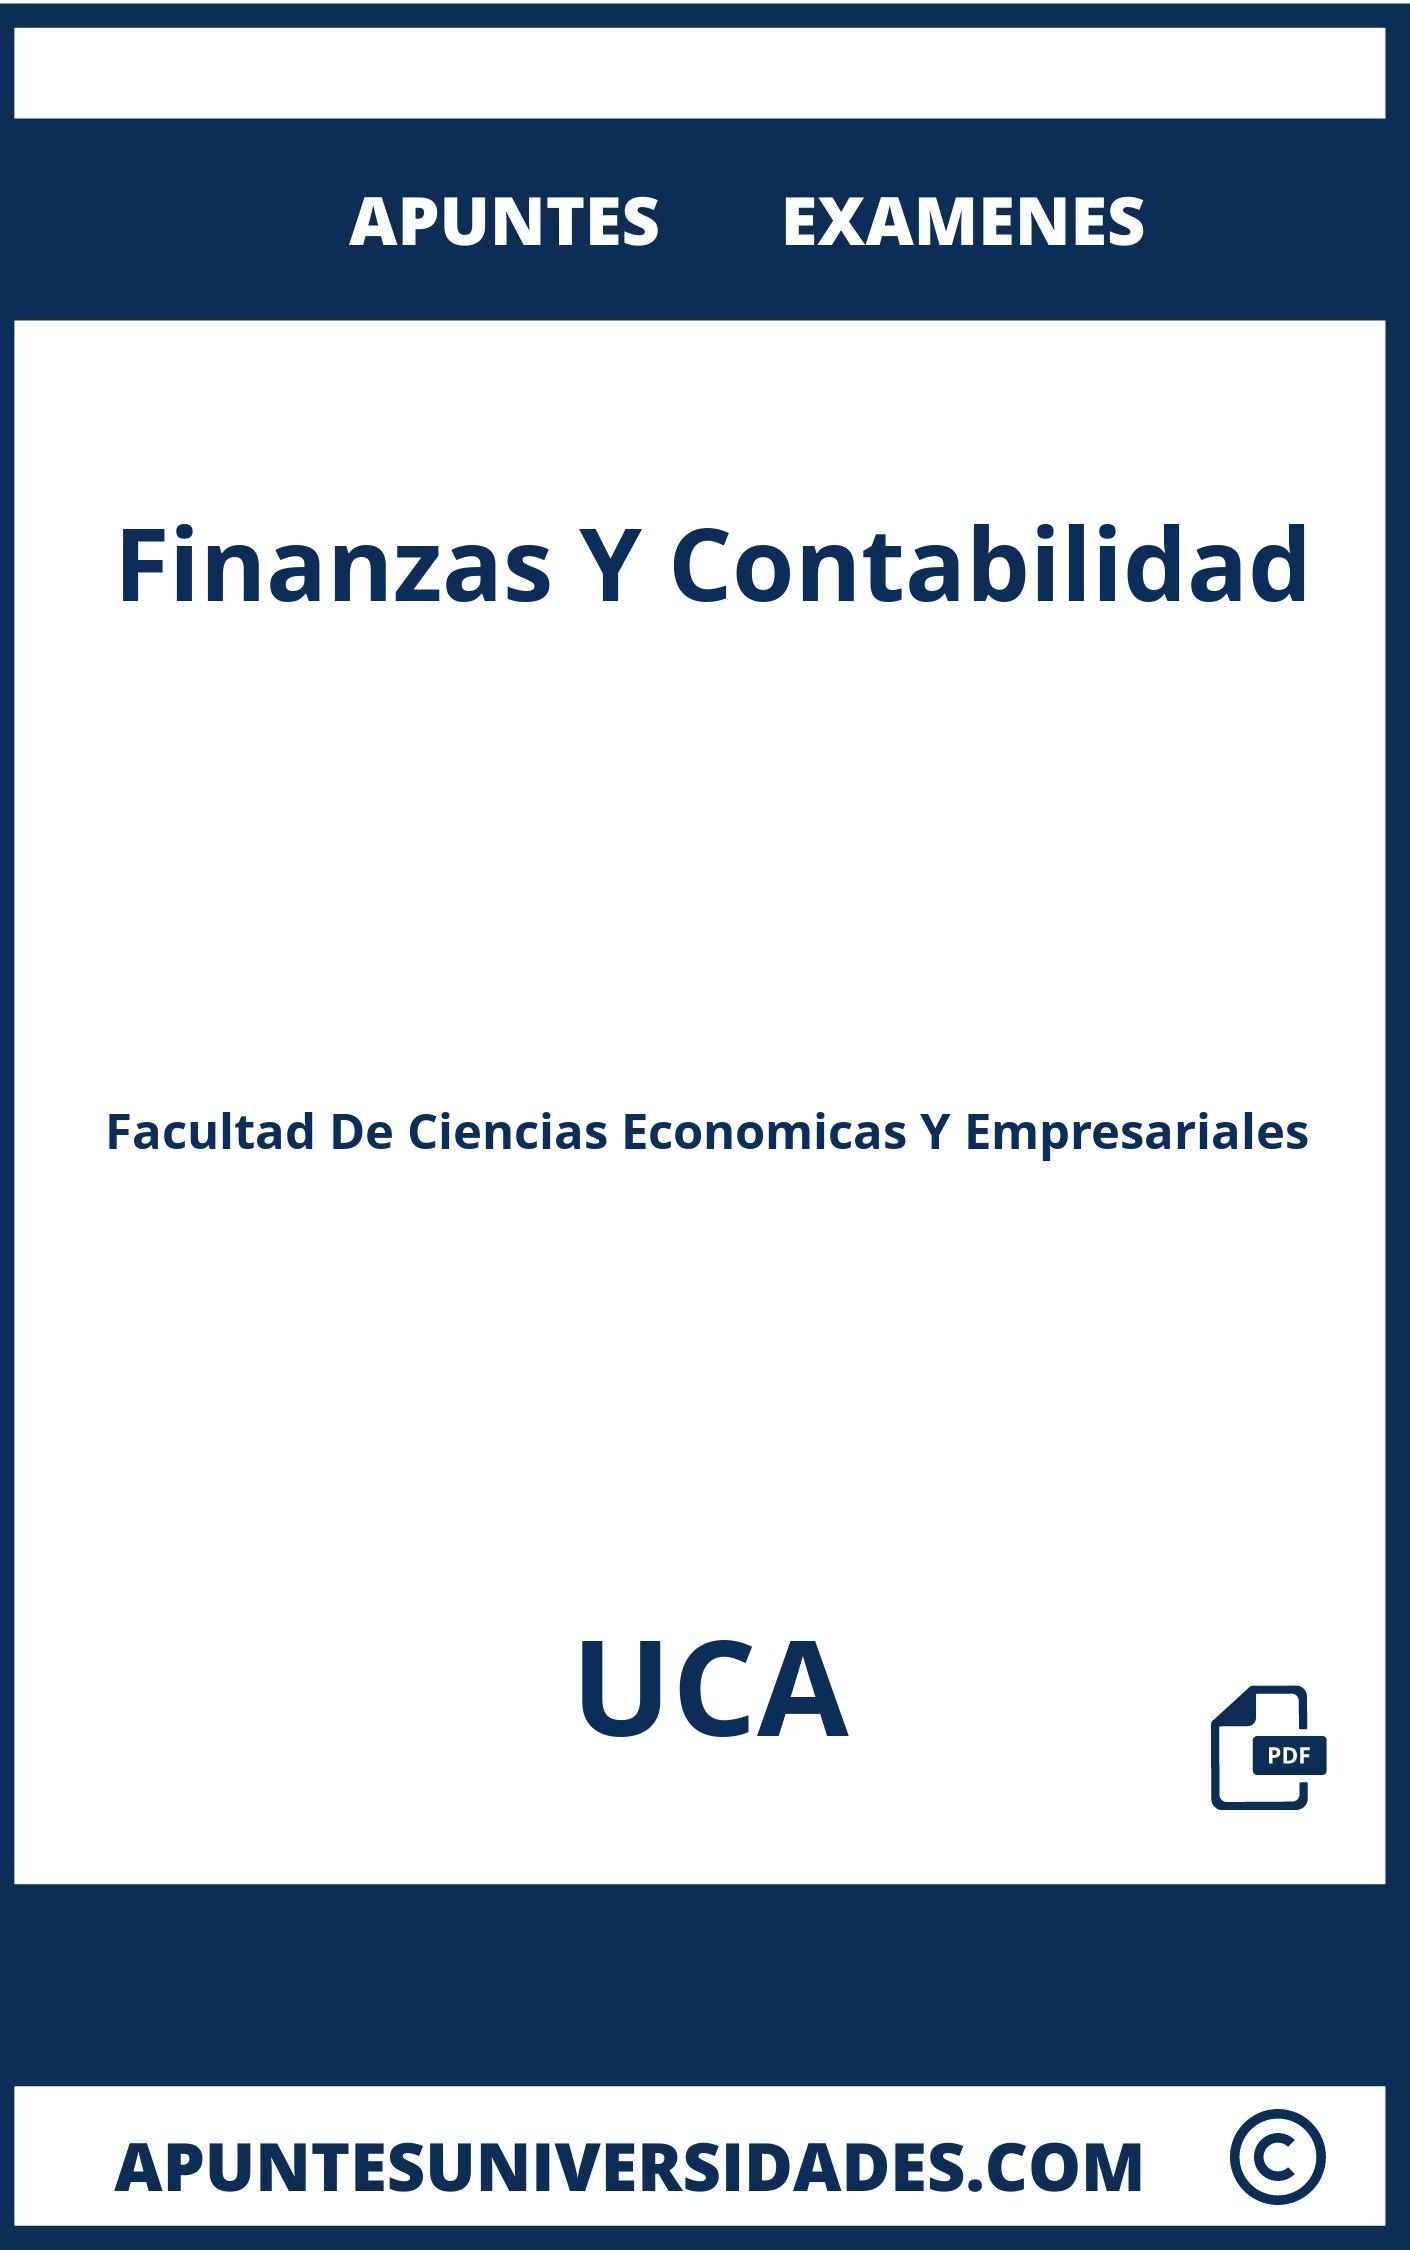 Finanzas Y Contabilidad UCA Examenes Apuntes